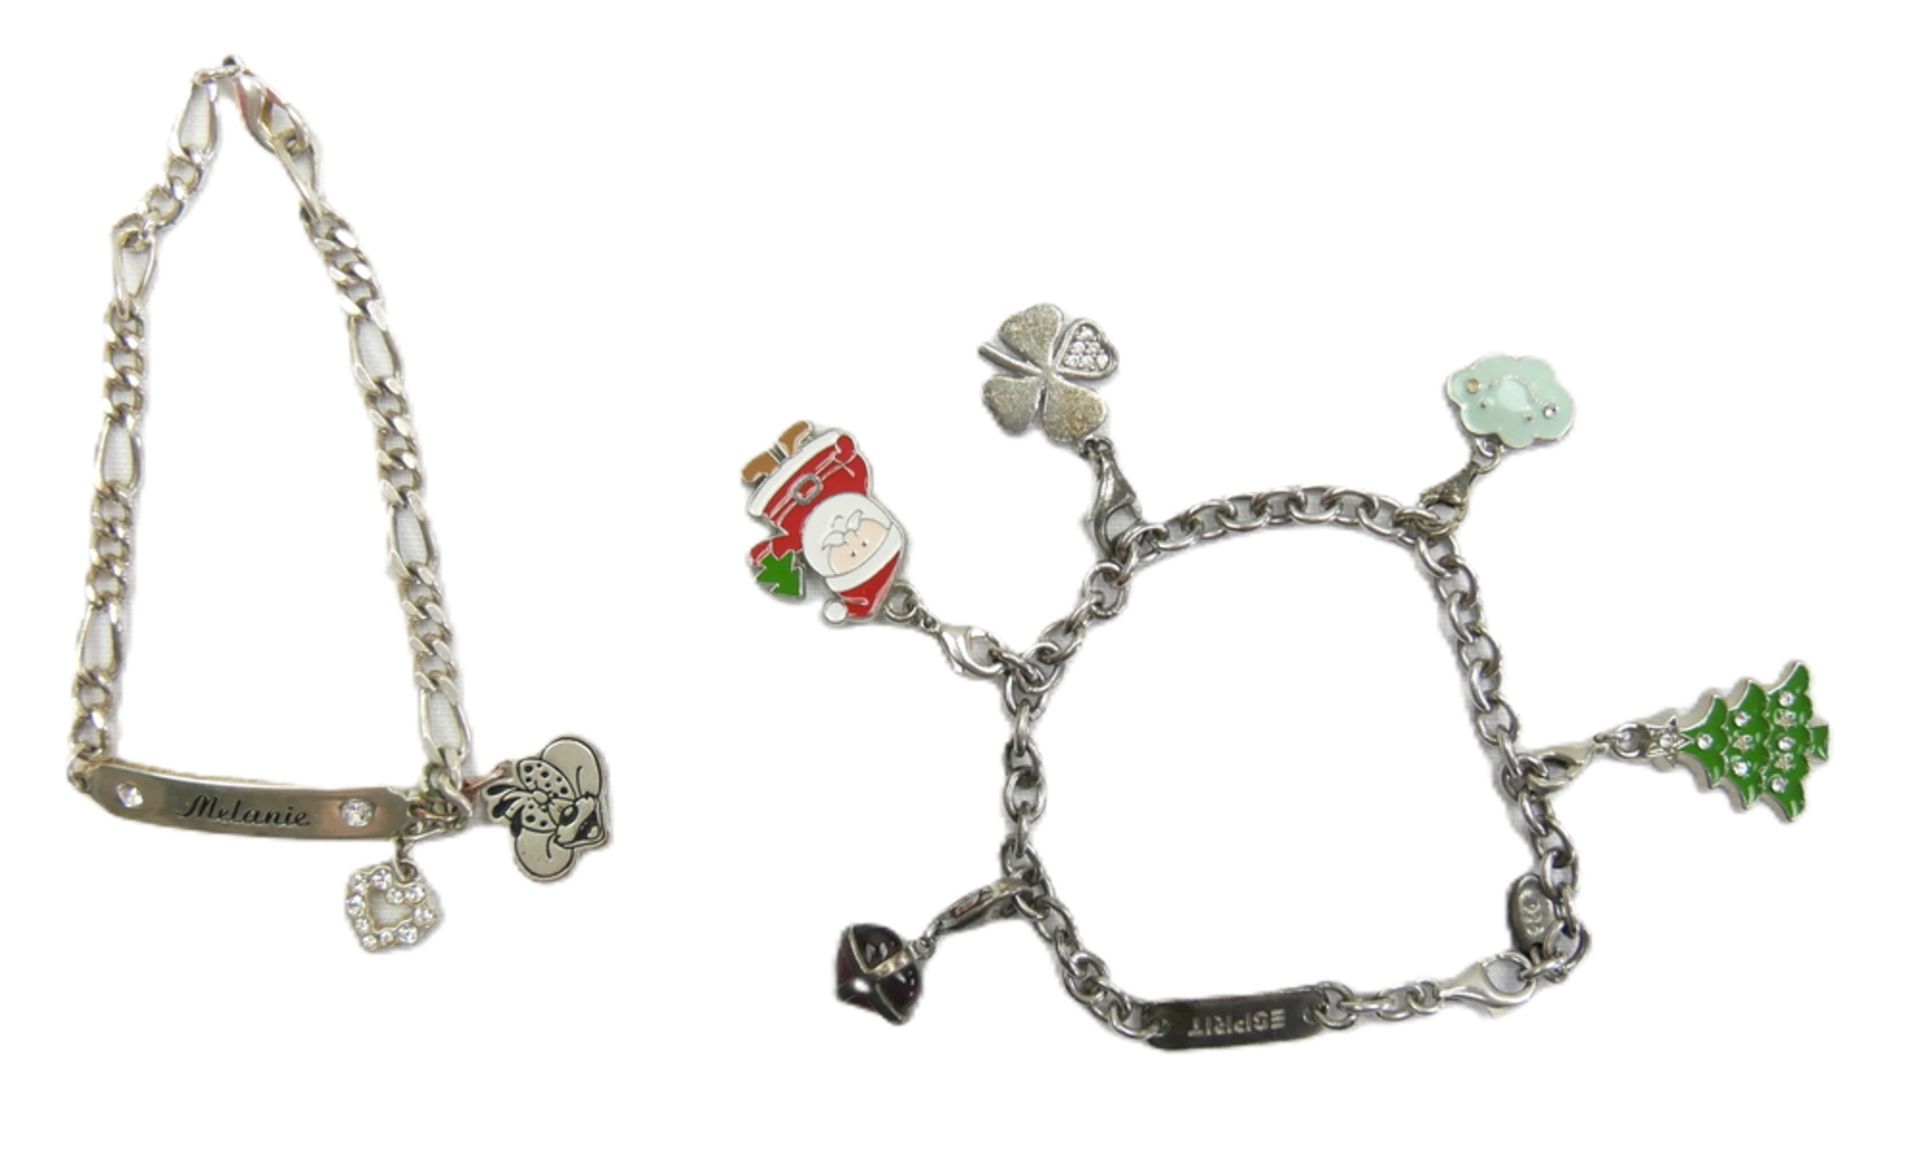 Esprit Silberarmband mit verschiedenen Charms sowie 1 Modearmband mit Charms. Bitte besichtigen